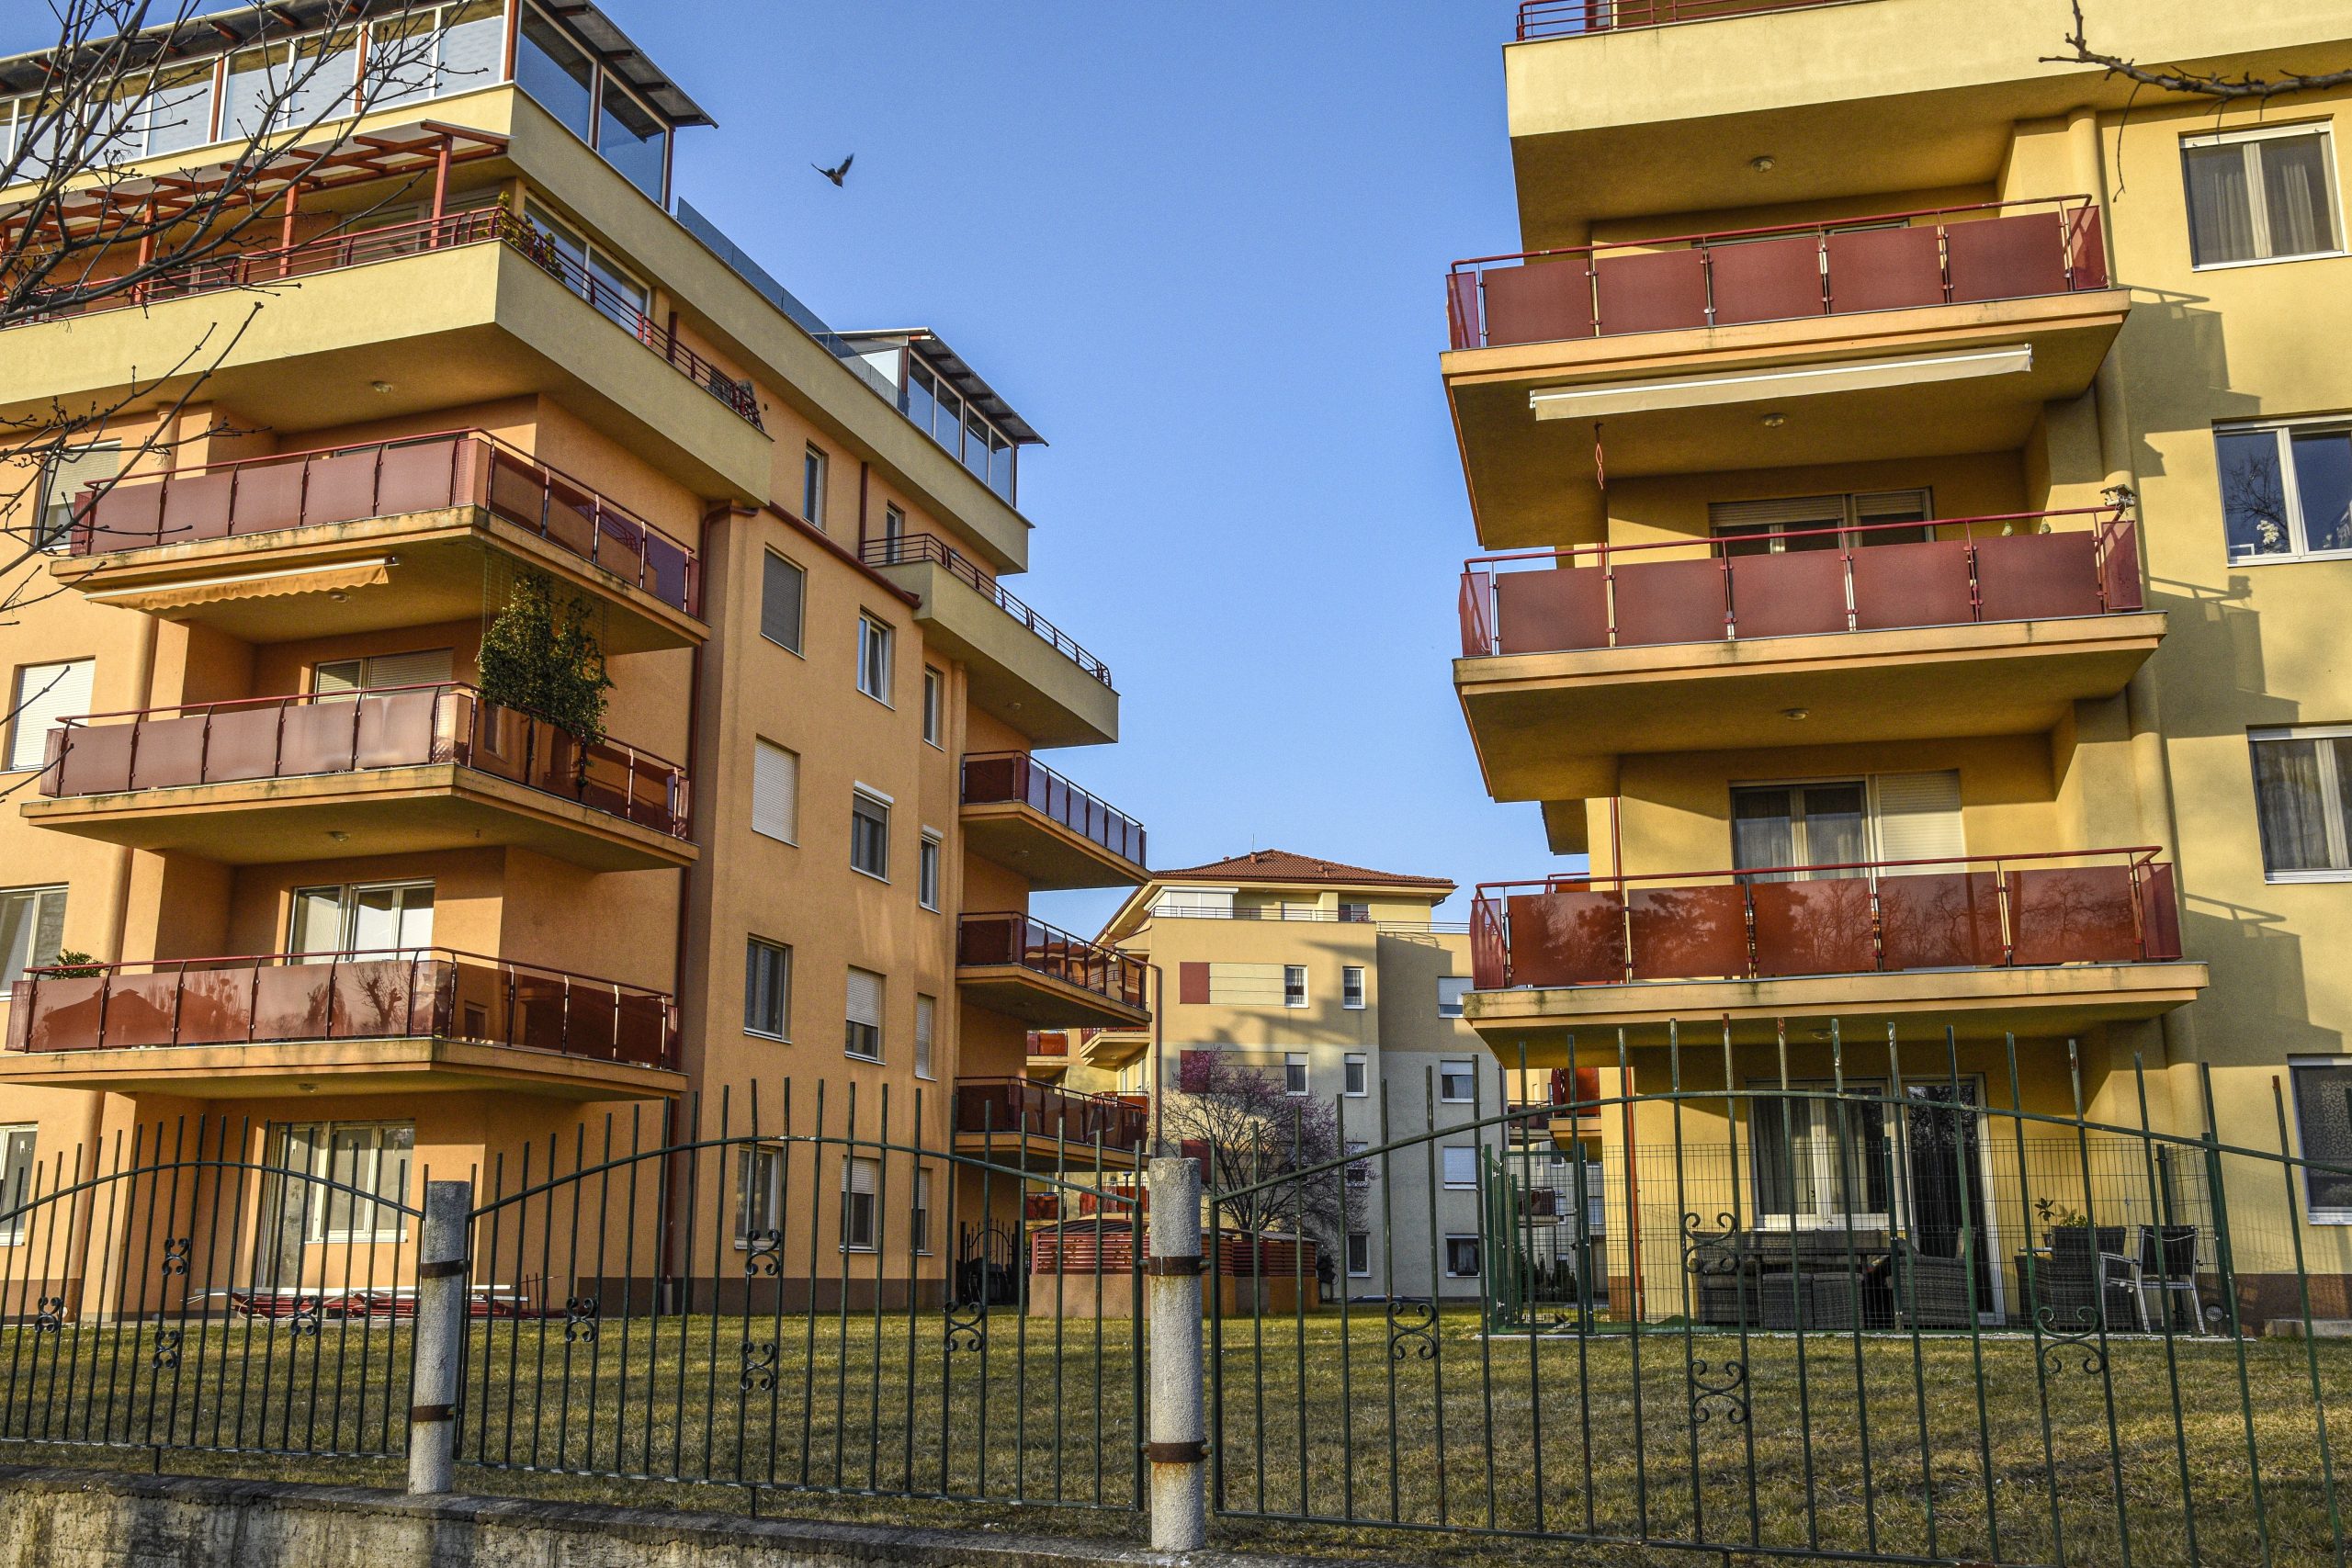 Steigende Nachfrage hat die Preise für Budapester Immobilien in die Höhe getrieben